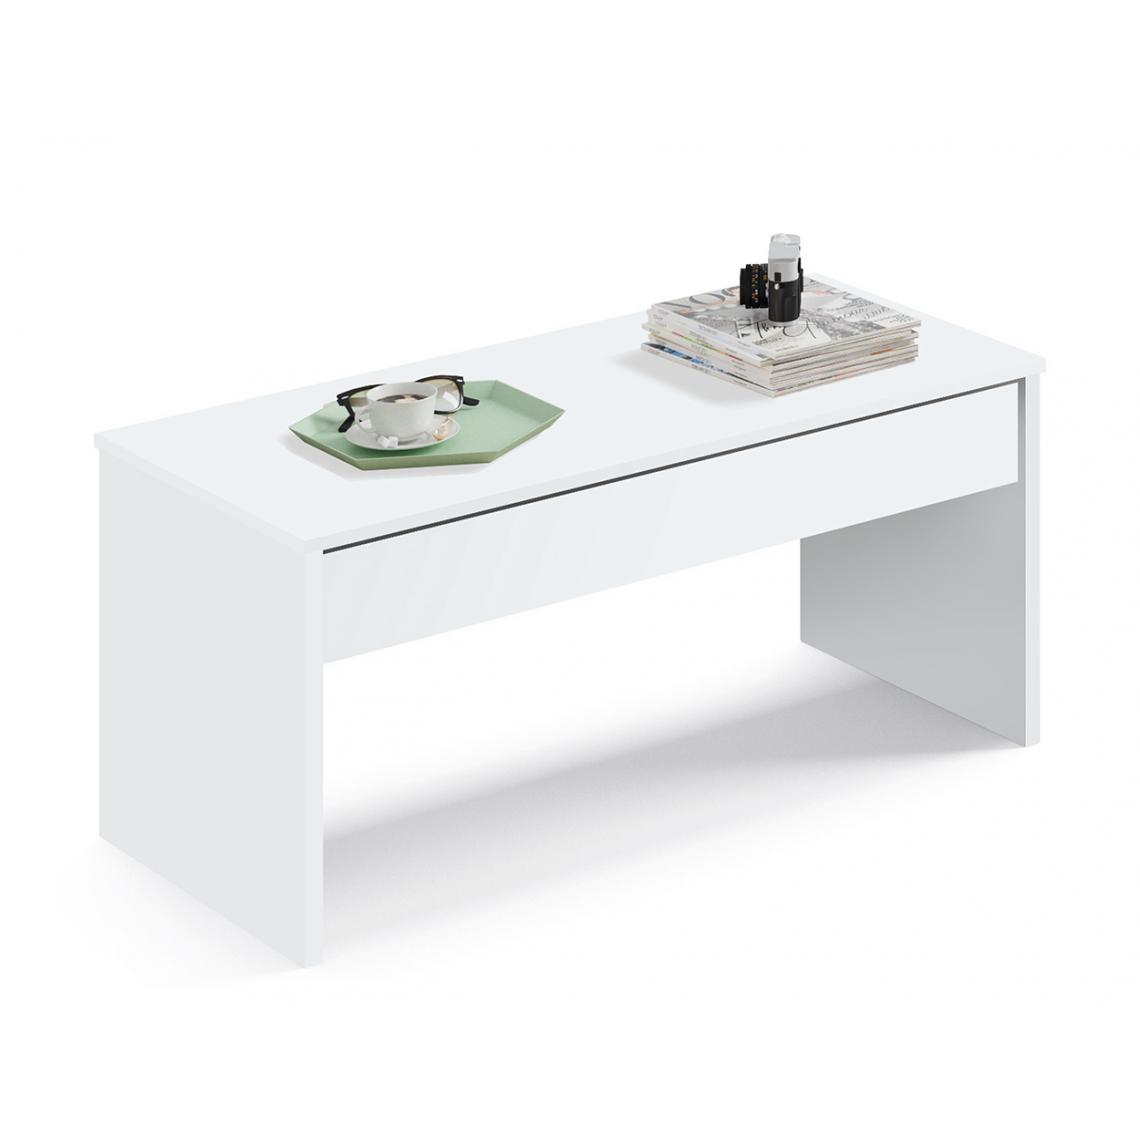 Pegane - Table basse relevable coloris blanc - Hauteur 47-58 x Longueur 100 x Profondeur 50 cm - Tables basses